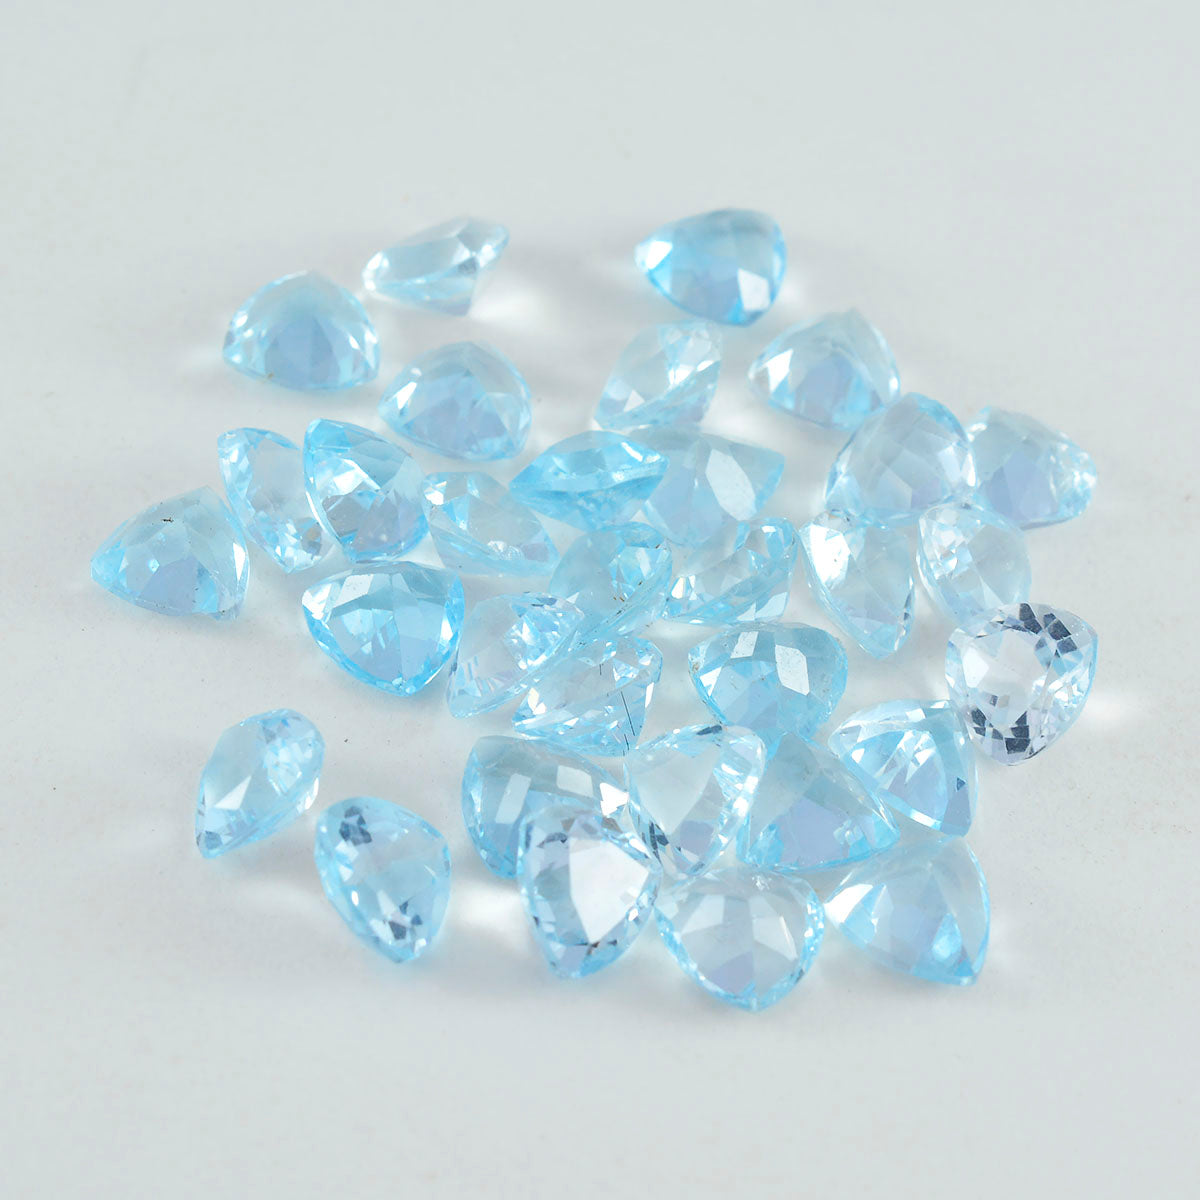 Riyogems 1PC echte blauwe topaas gefacetteerde 5x5 mm biljoen vorm verbazingwekkende kwaliteit edelsteen